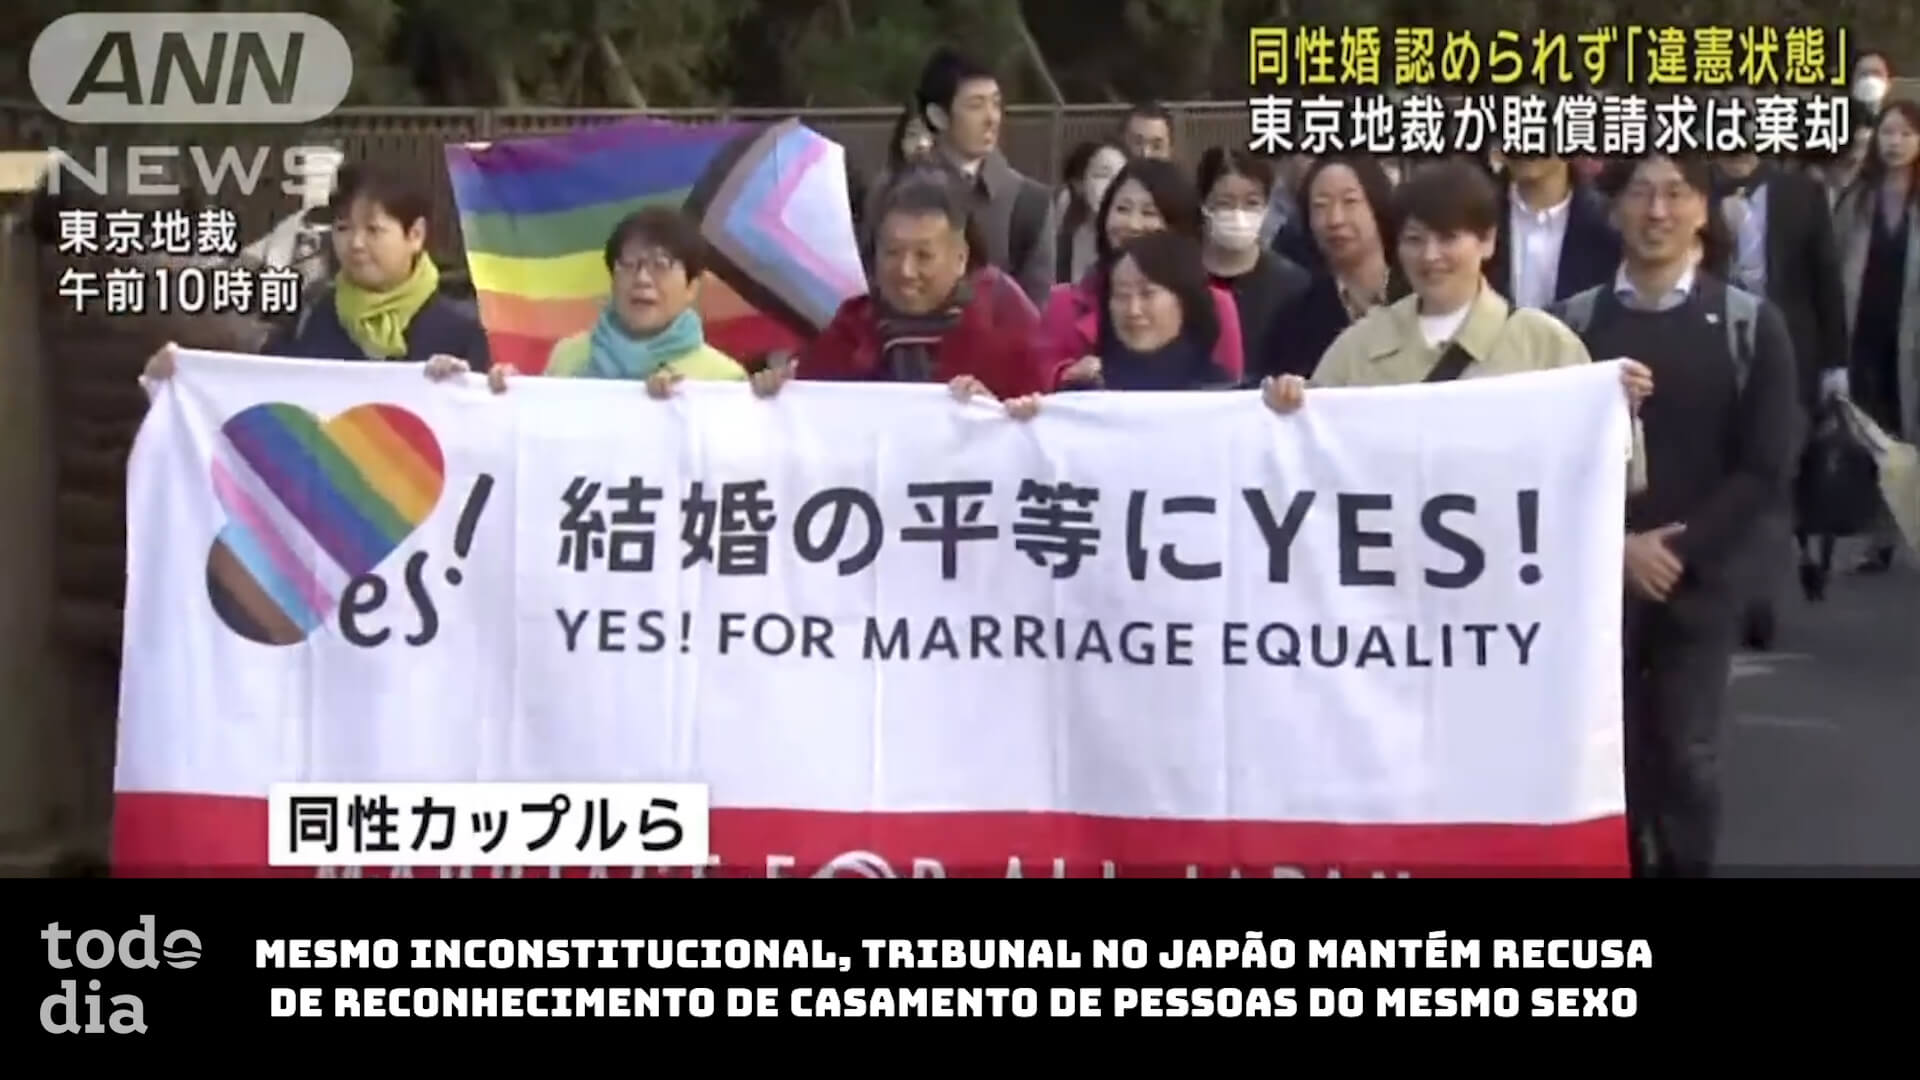 Mesmo inconstitucional, tribunal no Japão mantém recusa de reconhecimento de casamento de pessoas do mesmo sexo 